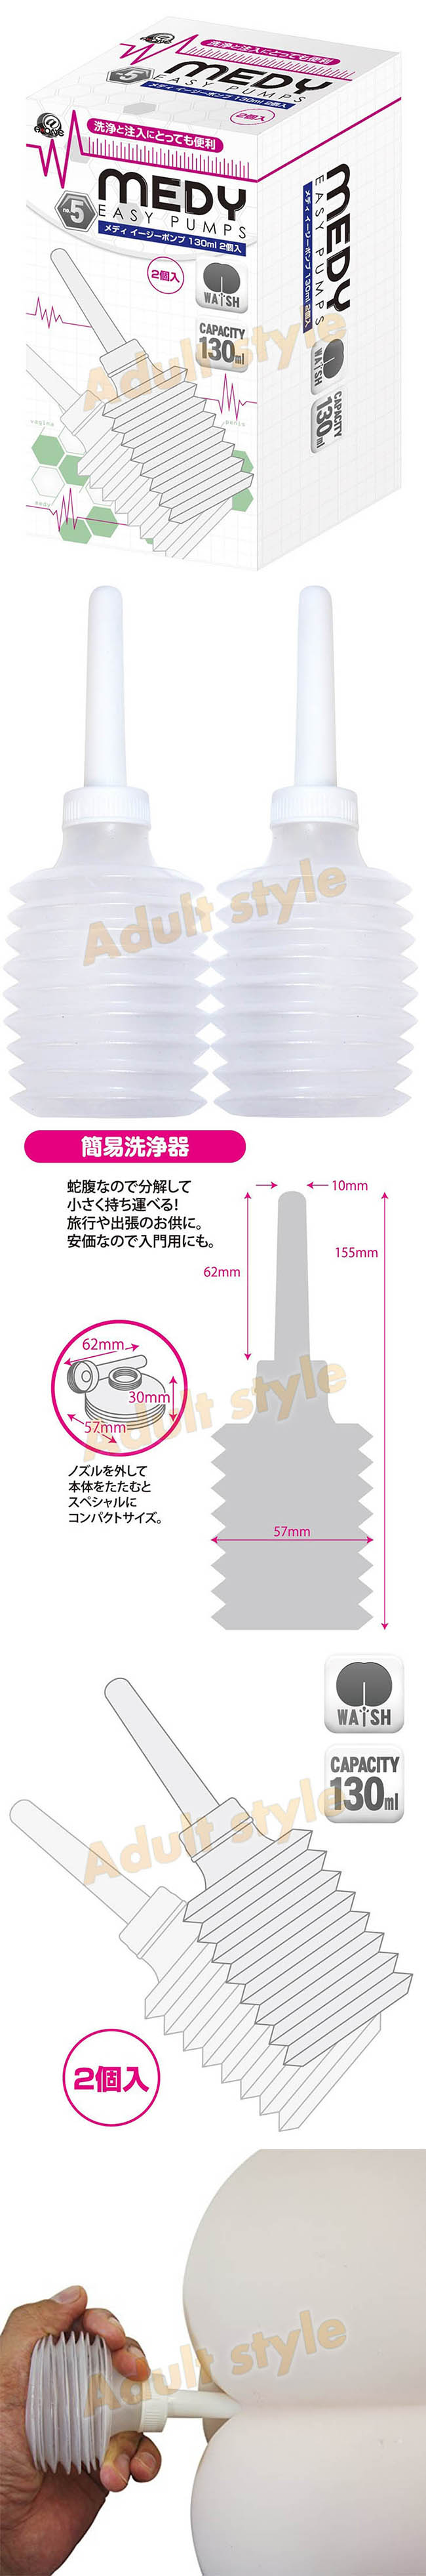 情趣精品-日本A-ONE MEDY灌腸注入器(攜帶輕便型)2入